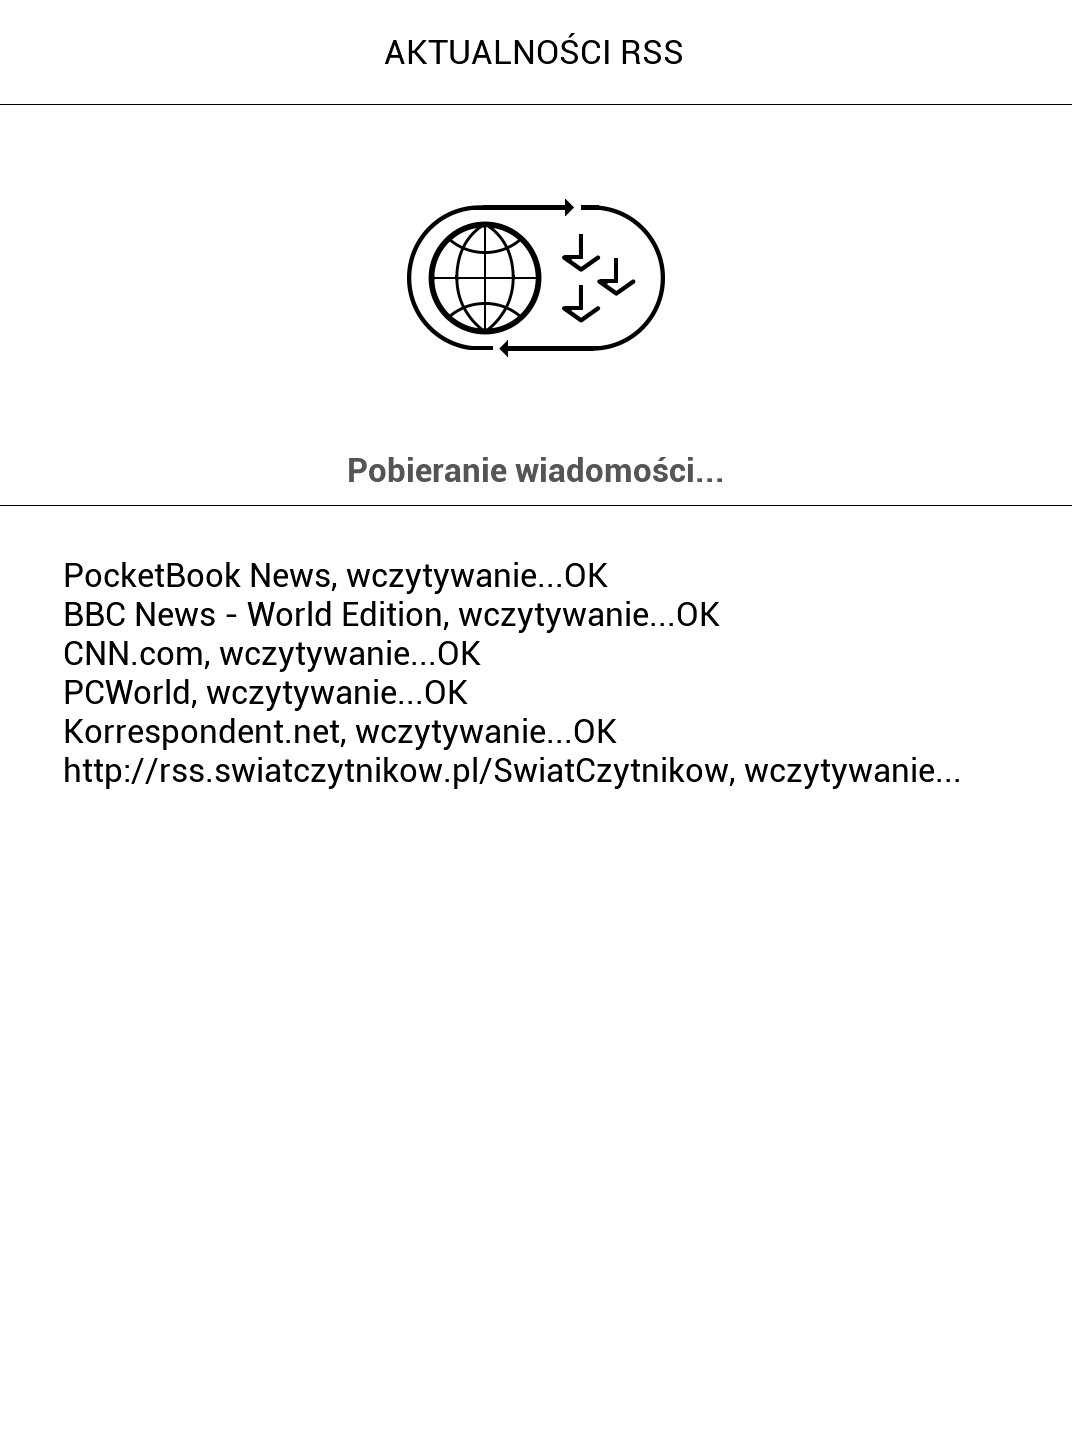 PocketBook Color 633 – pobieranie wiadomości z kanałów RSS